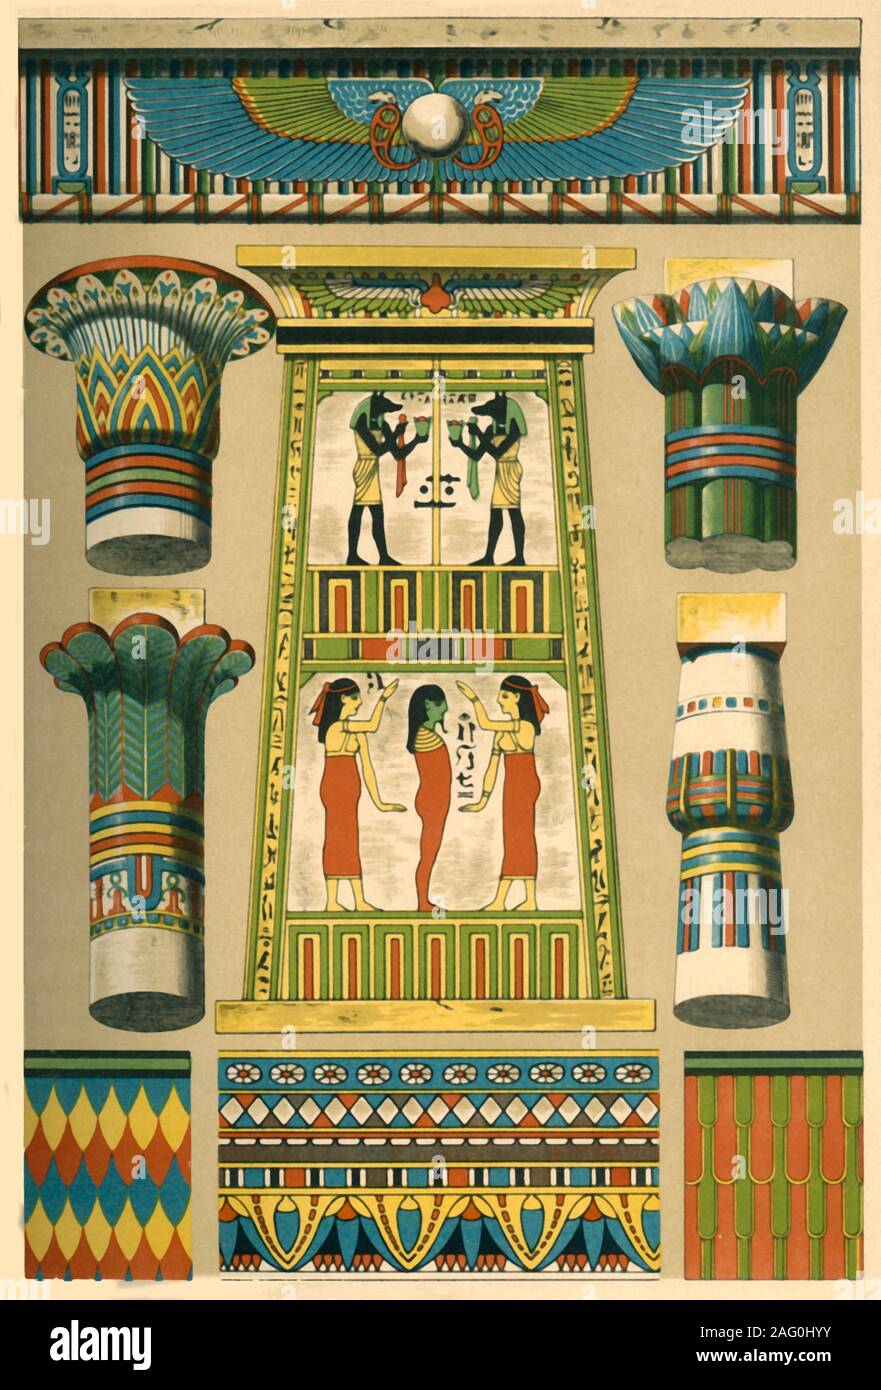 📜🌴 PAPIRO EGIZIO fai da te - Laboratorio di Arte dell'Antico Egitto  (Tutorial) 🖌🎨 